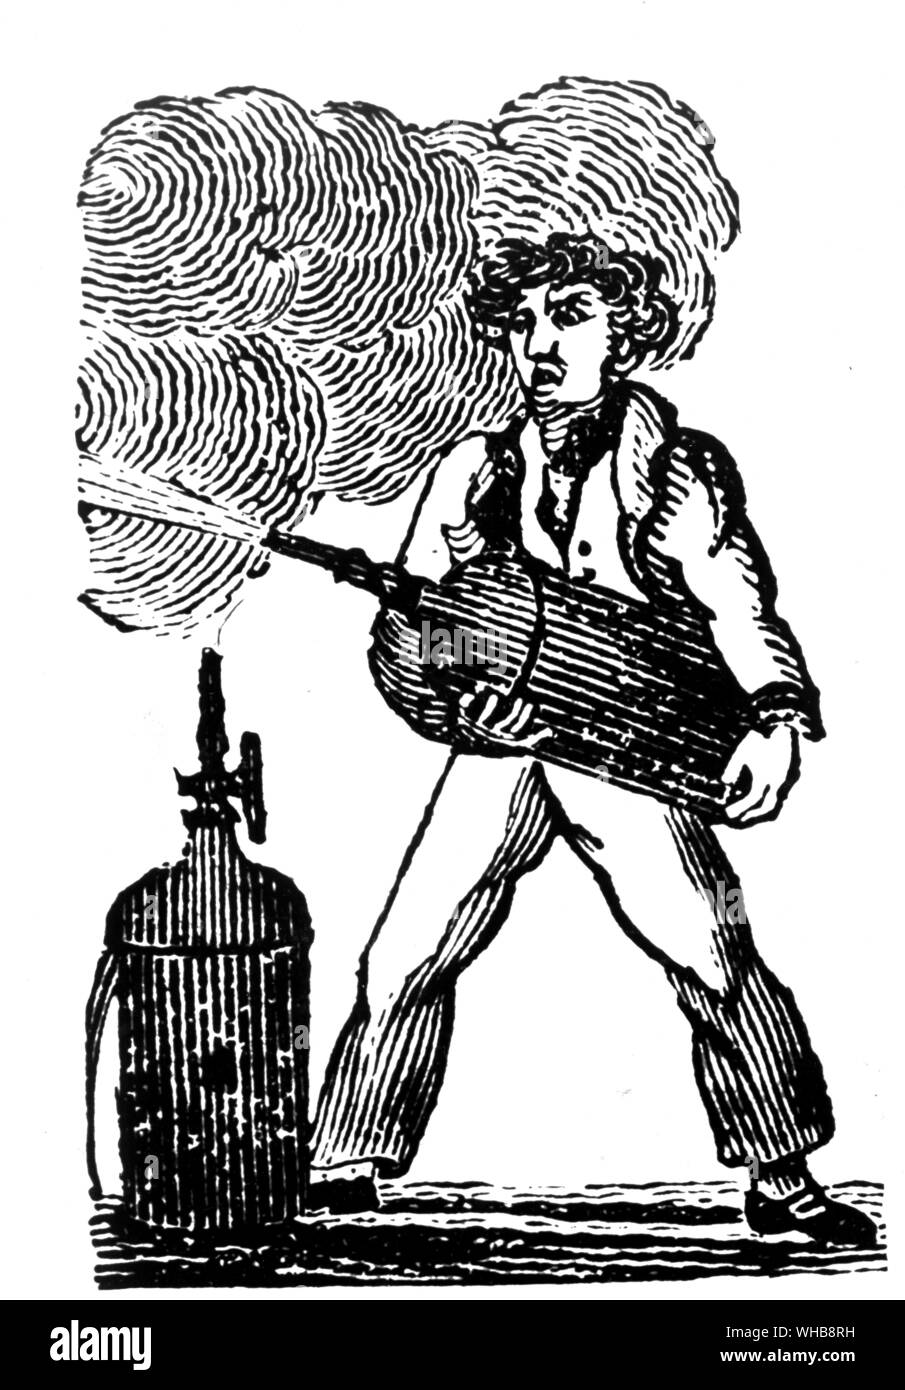 El capitán Manby invento del 1816 por cortesía de la Asociación de Protección Contra Incendios, Londres - el capitán George William Manby (nacido el 28 de noviembre de 1765 en Denver, Norfolk, Inglaterra. Murió el 18 de noviembre de 1854 en Great Yarmouth) fue el inventor de un extintor de incendios entre otras cosas. Foto de stock